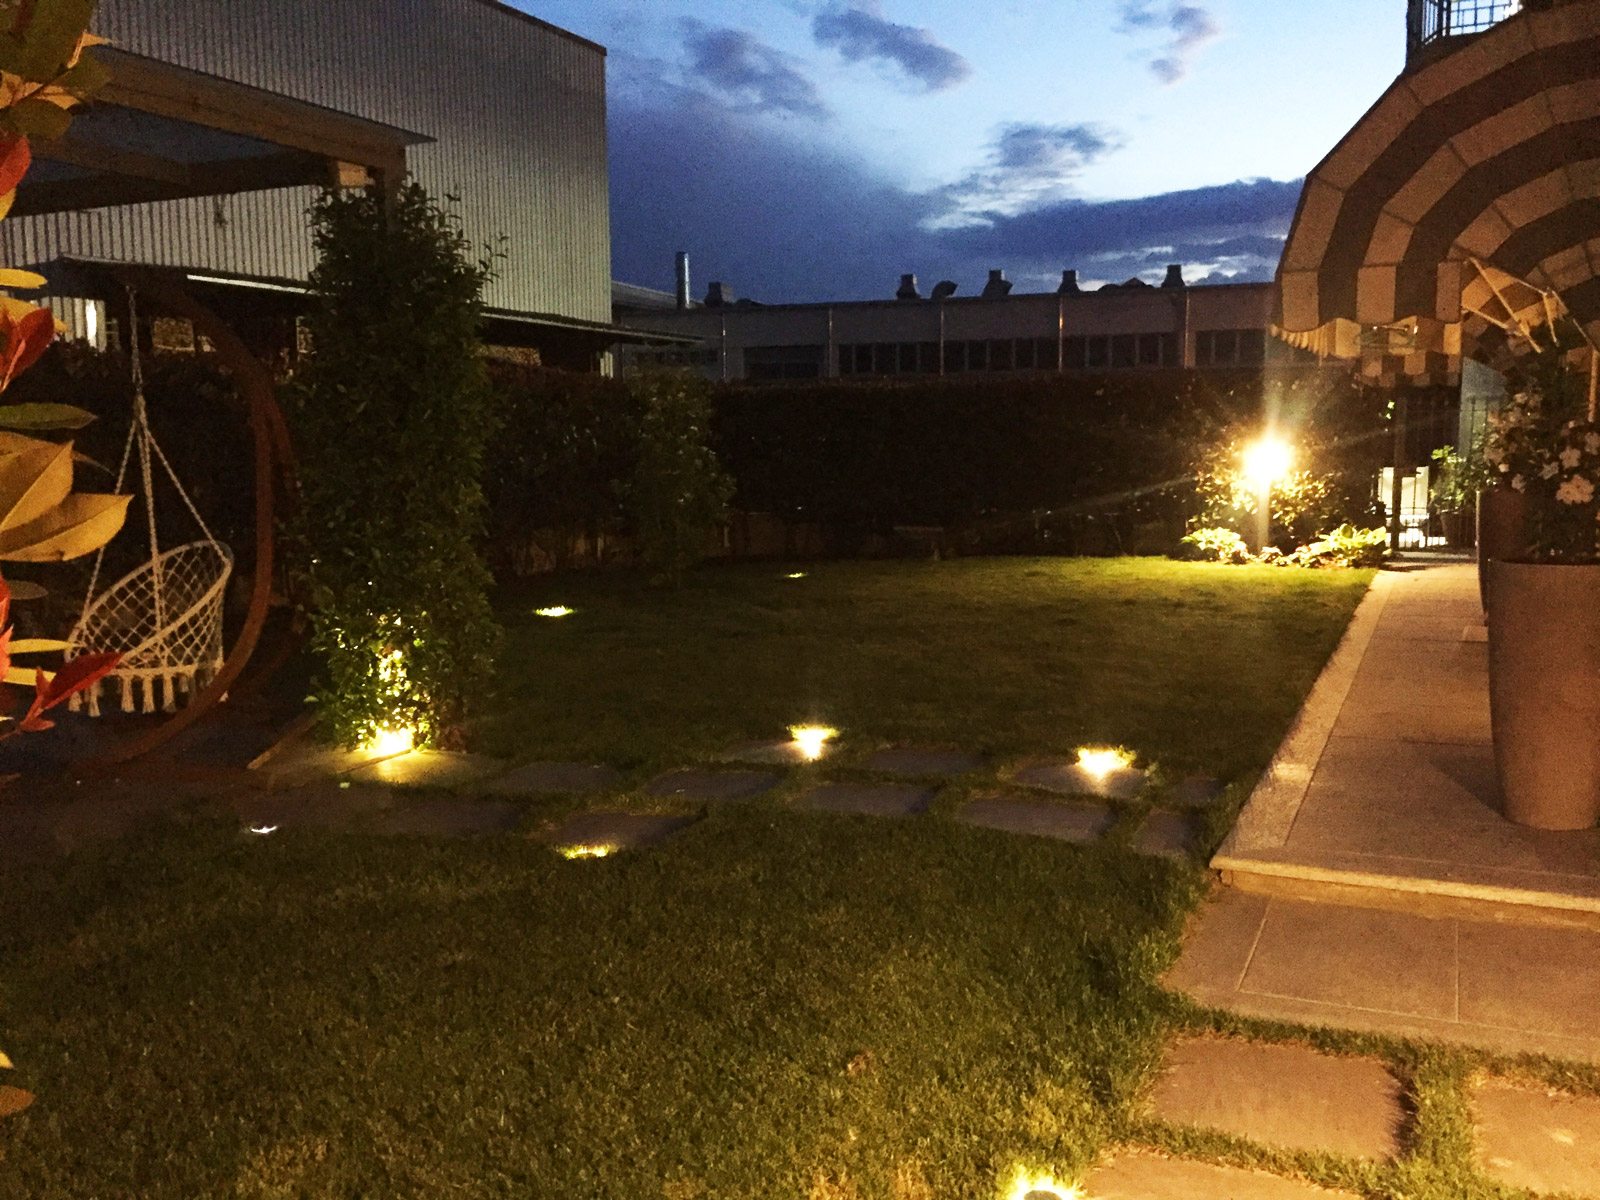 Dettagli Giardino in villa con la nuova illuminazione a led a Savigliano (CN)